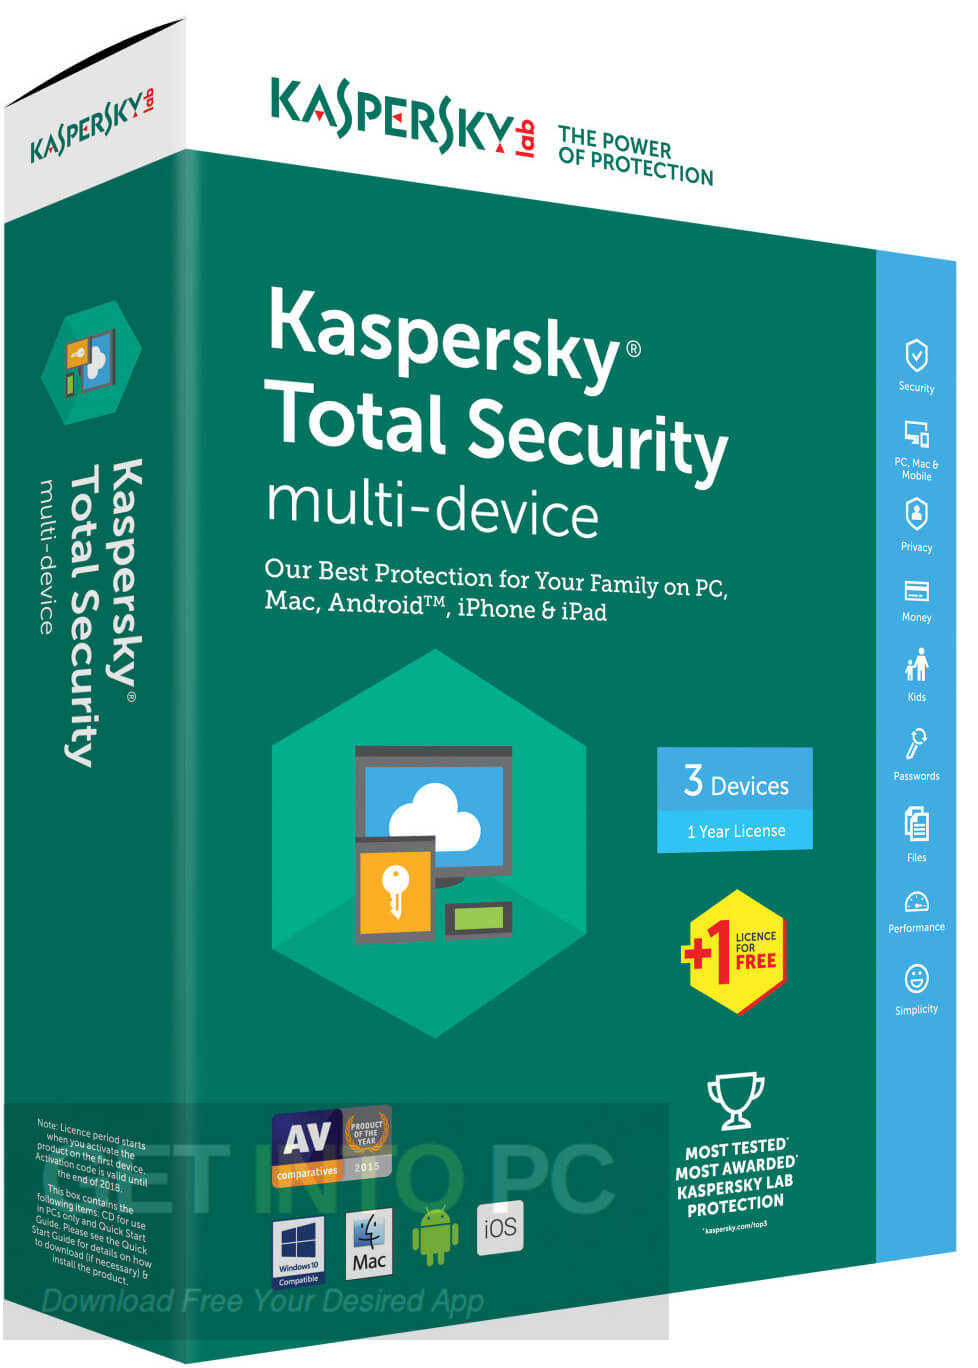 kaspersky-total-security-2018-free-download-jpg